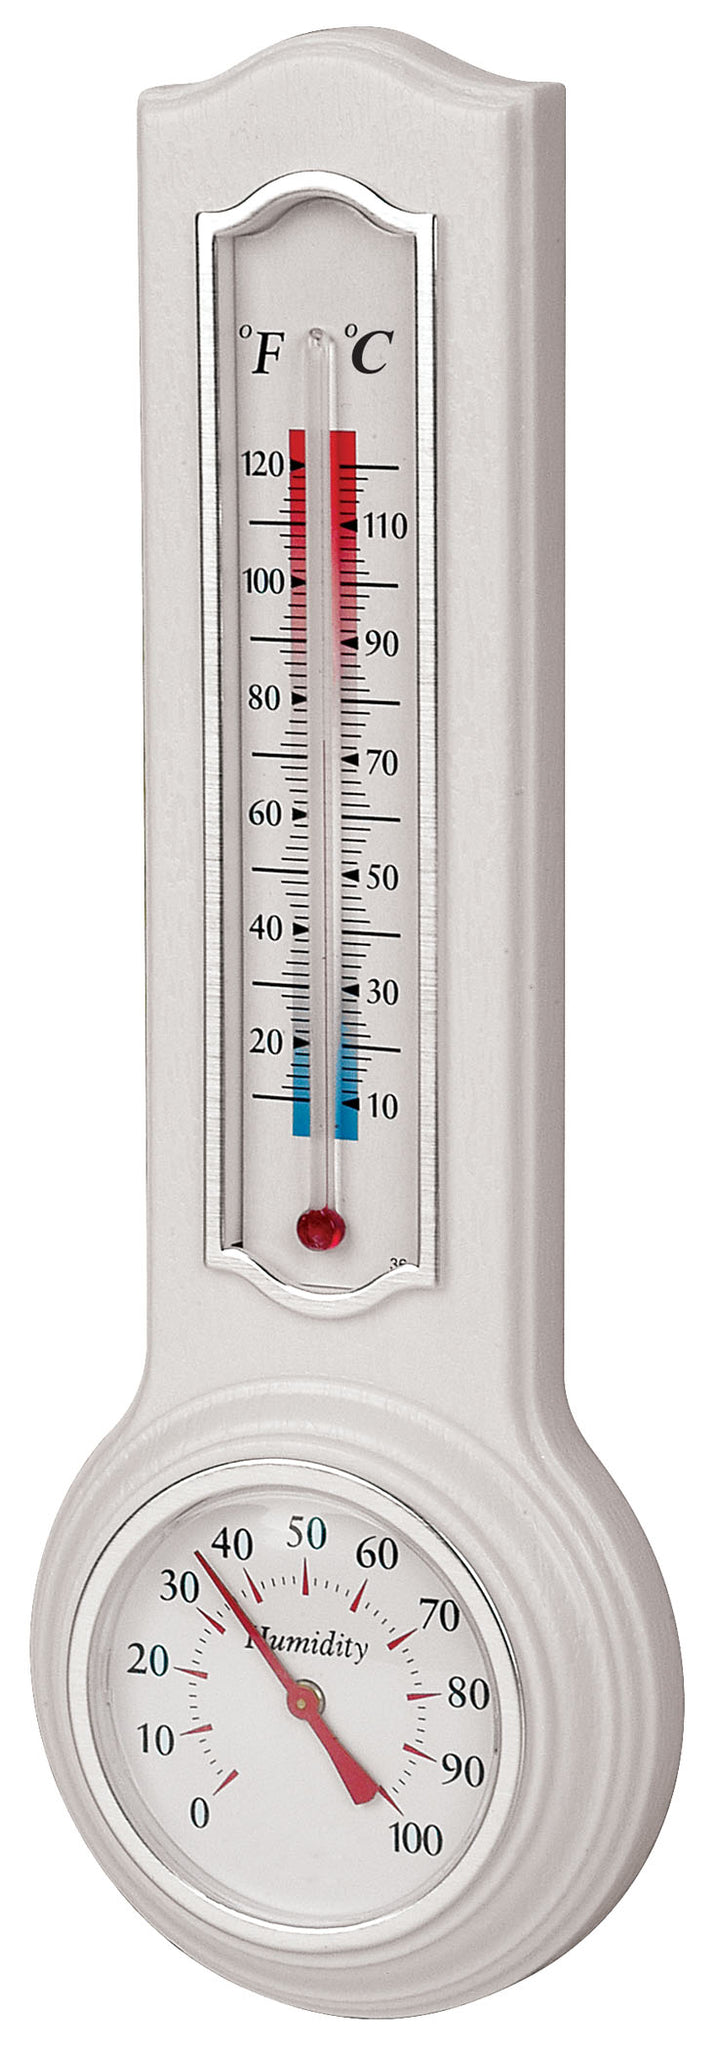 Thermomètre hygromètre intérieur, 1 unité – BIOS : Thermomètre et hygromètre